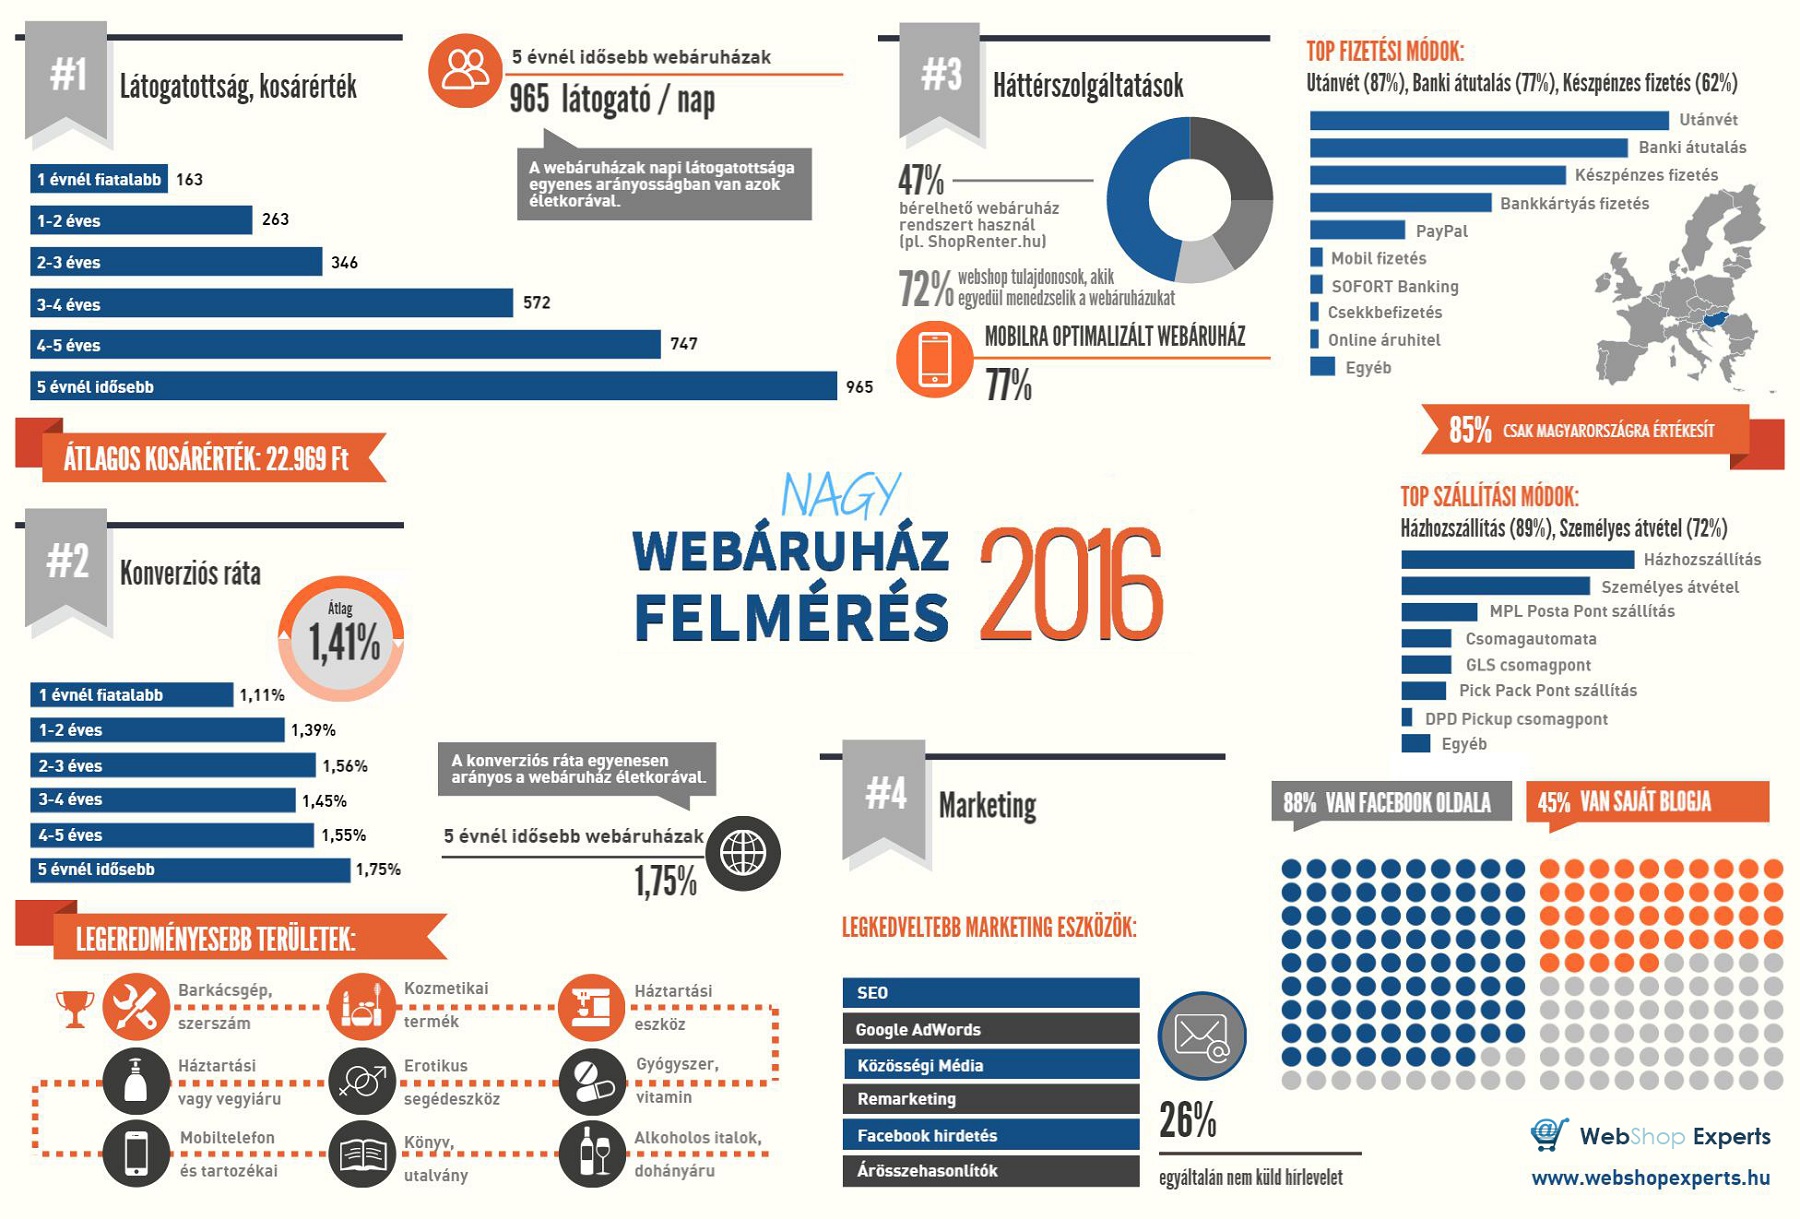 Nagy Webáuhát Felmérés 2016 Infografika